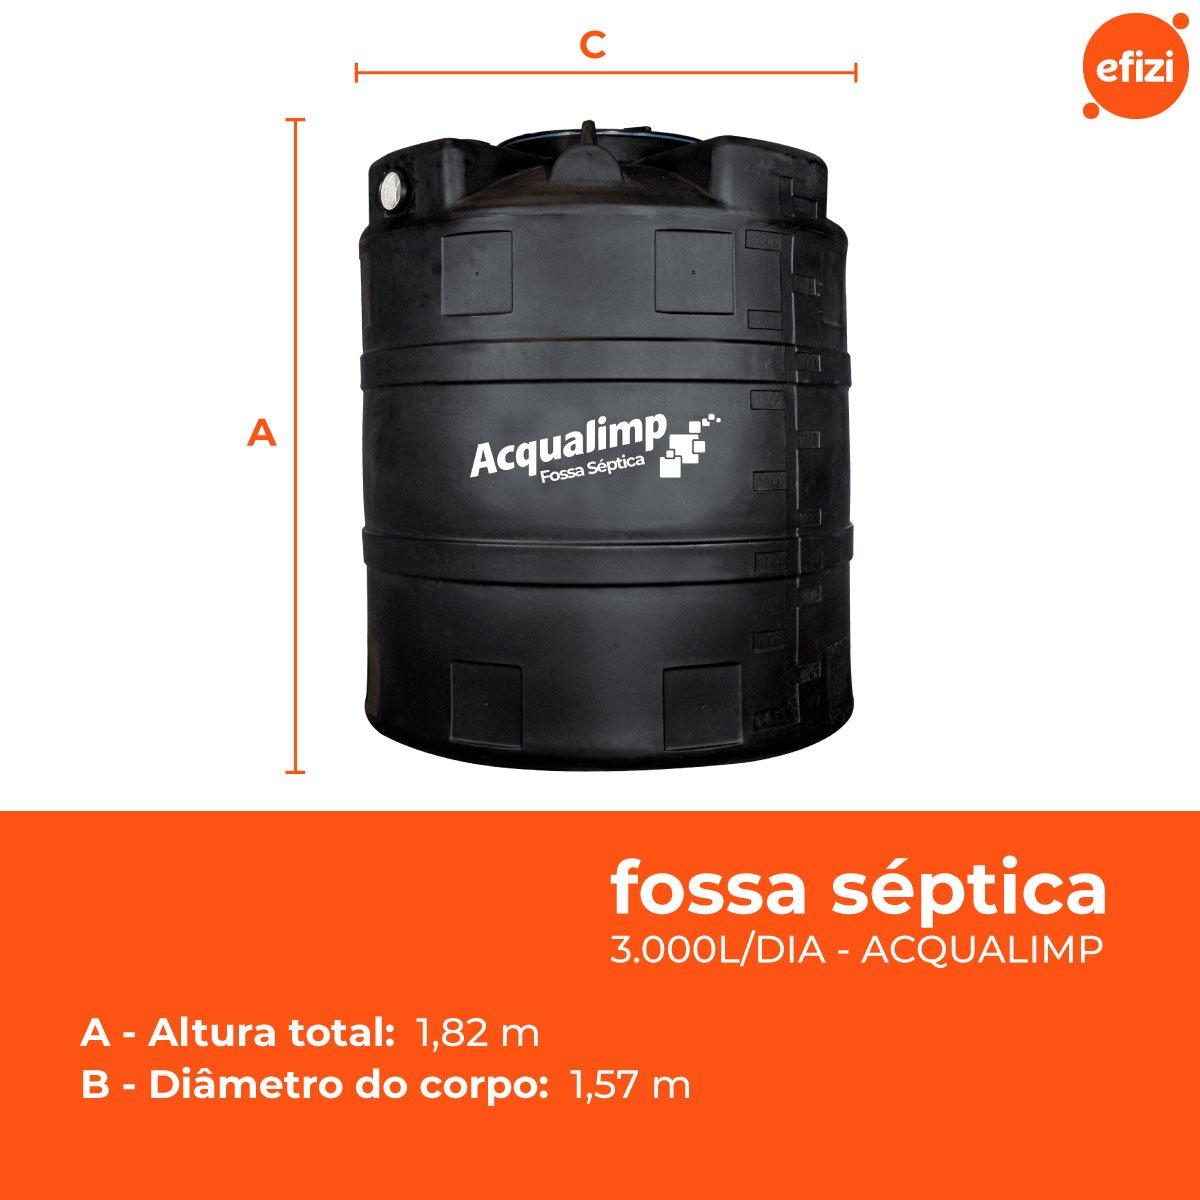 Fossa Séptica 2.800l Acqualimp - 3